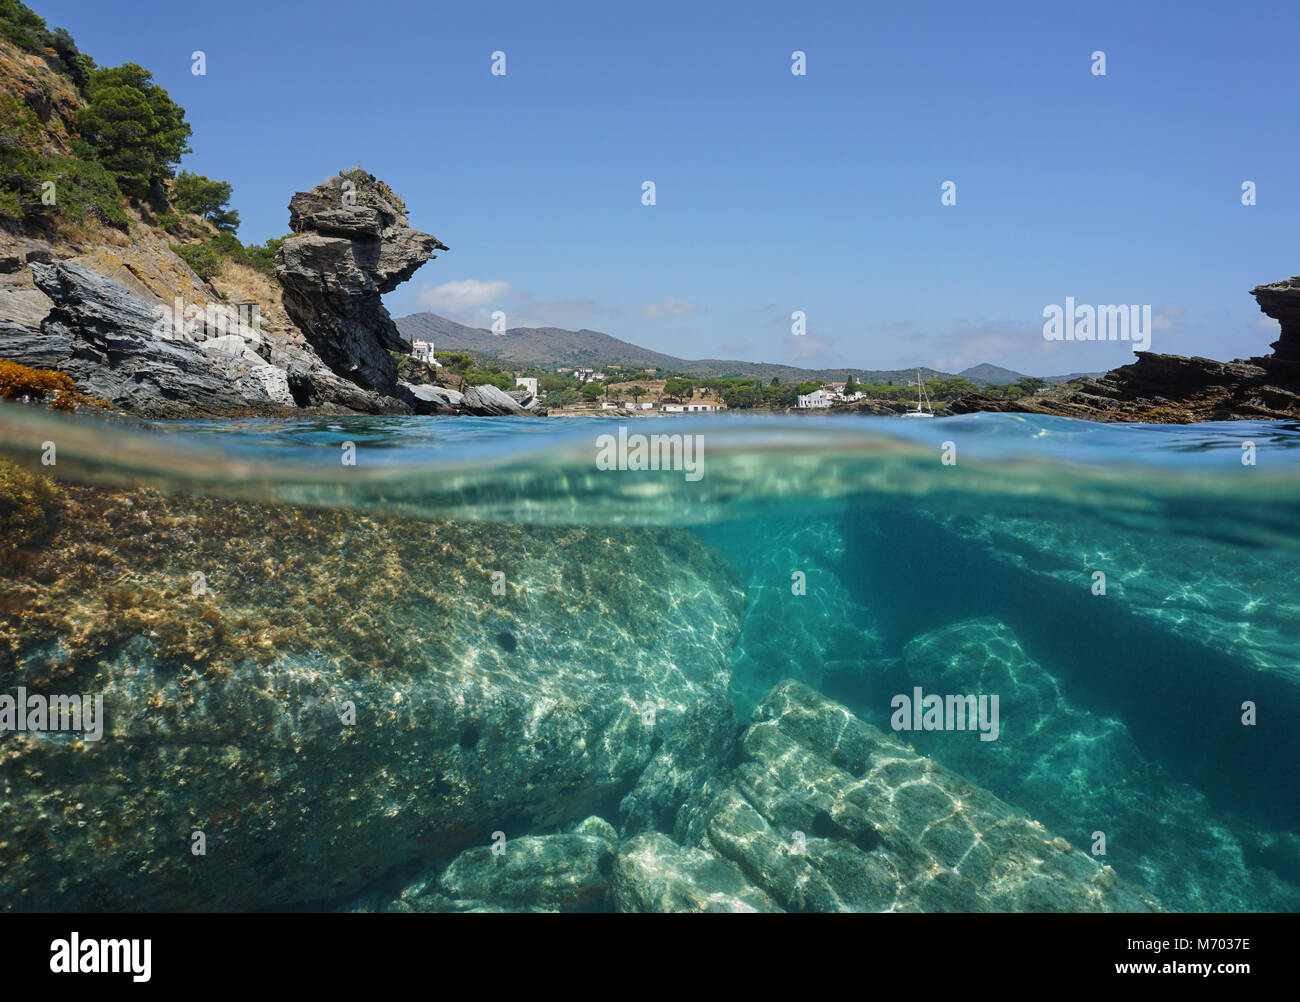 Rocce sulla riva del mare e subacquea, vista suddivisa al di sopra e al di sotto della superficie dell'acqua, mare Mediterraneo, spagna Costa Brava, Cap de Creus, la Catalogna Foto Stock